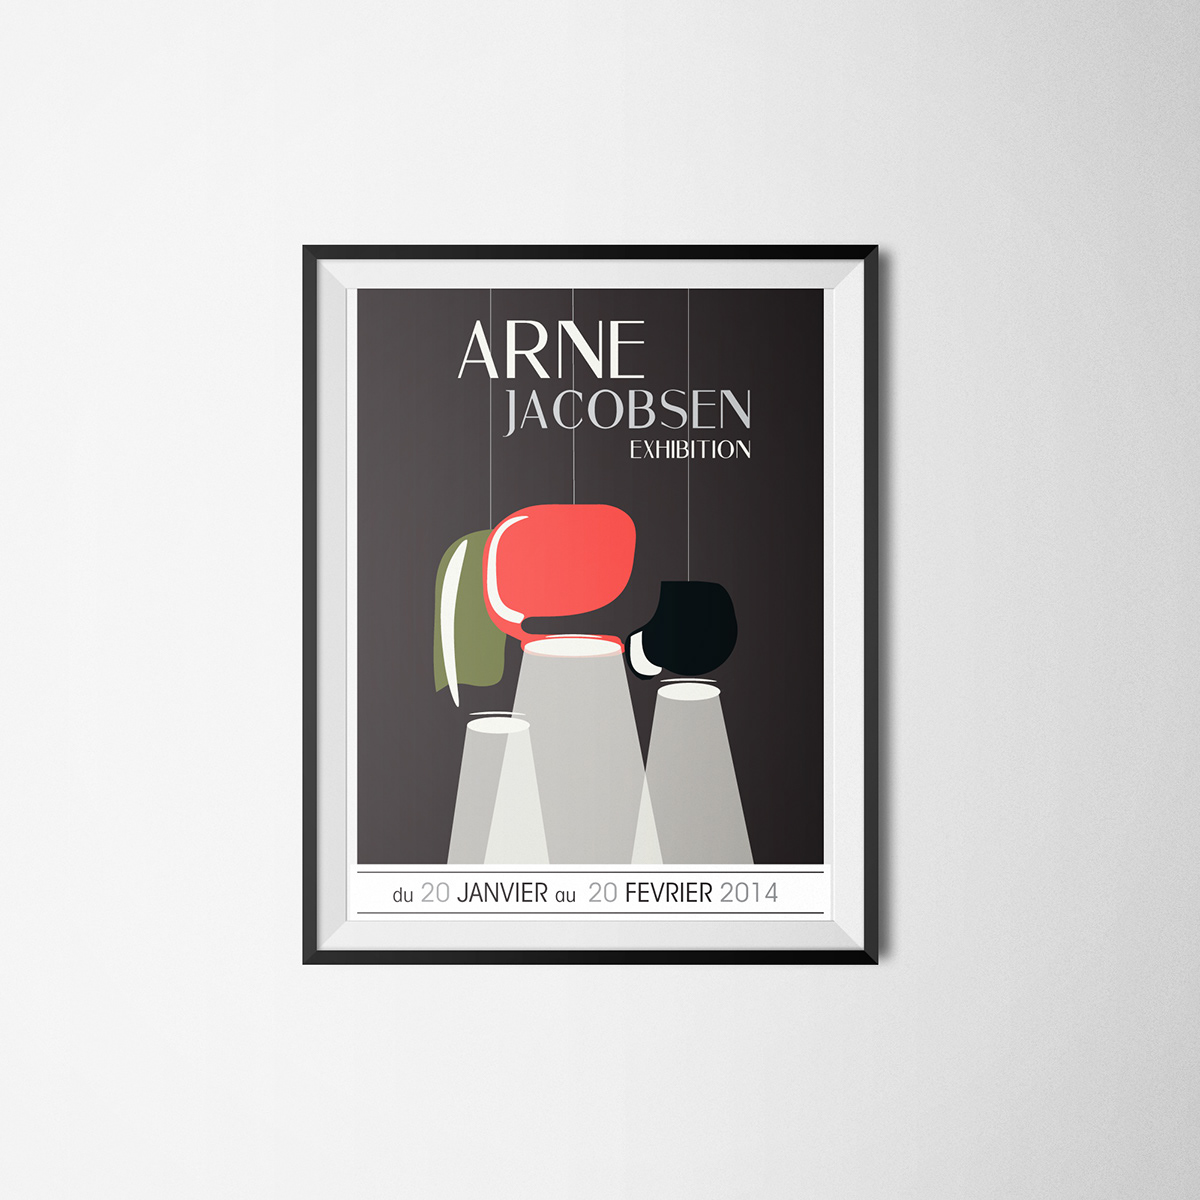 Arne Jacobsen posters